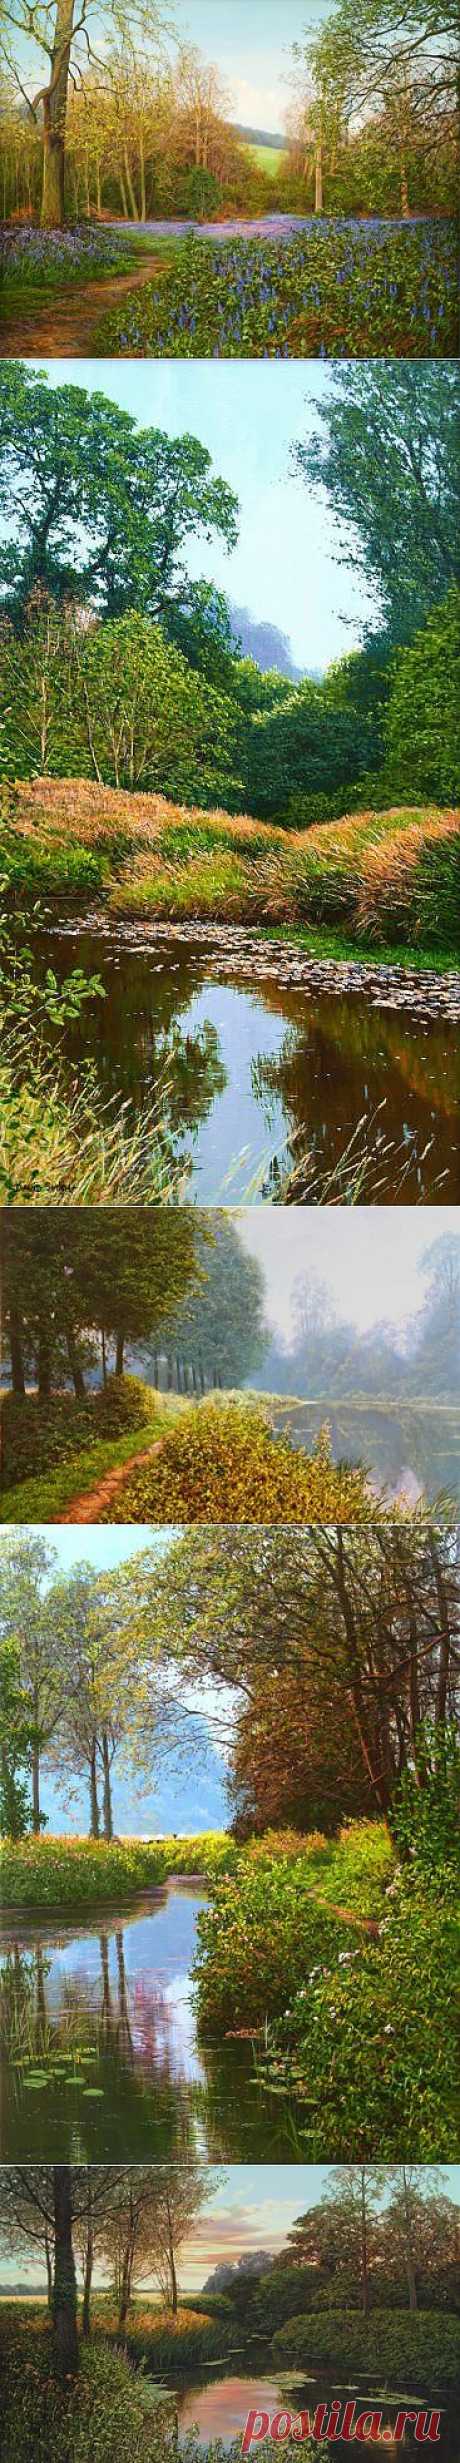 Реалистичные пейзажи от David Smith. Один из самых известных британских художников David Smith родился в в 1949 году.
Исключительно живописью занимается с 1976 года. Половина работ продаётся в США.